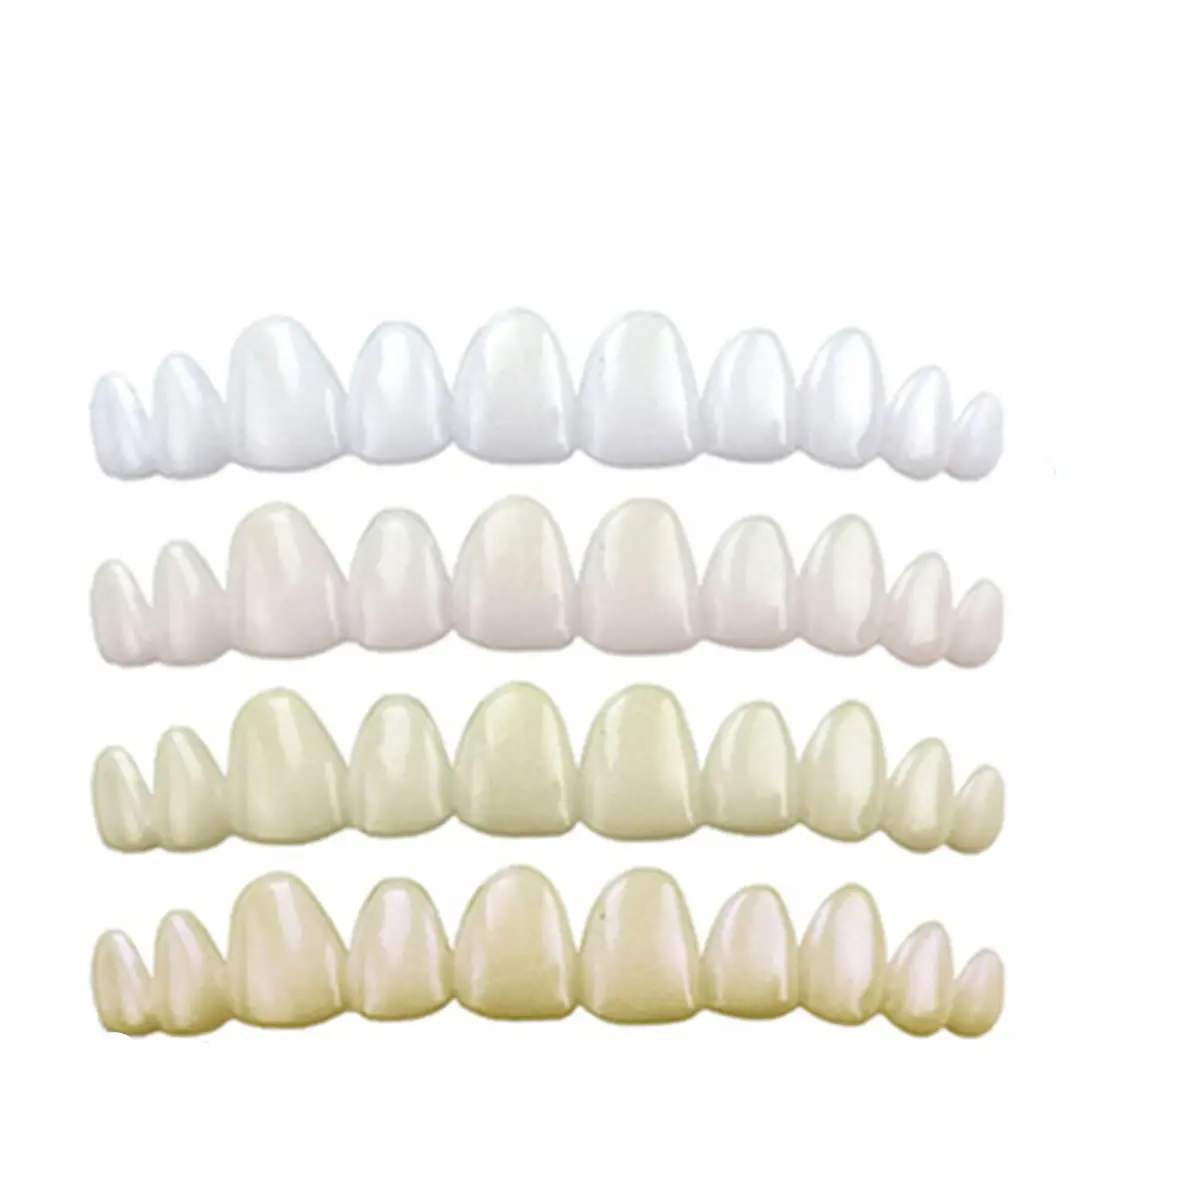 ฟันปลอมสำหรับใส่ฟัน3หรือ4เฉด/ชุด,ฟันปลอมฟันปลอมฟันปลอมแบบชั่วคราวแผ่นครอบฟันปลอมแบบสลิมฟิตสไมล์